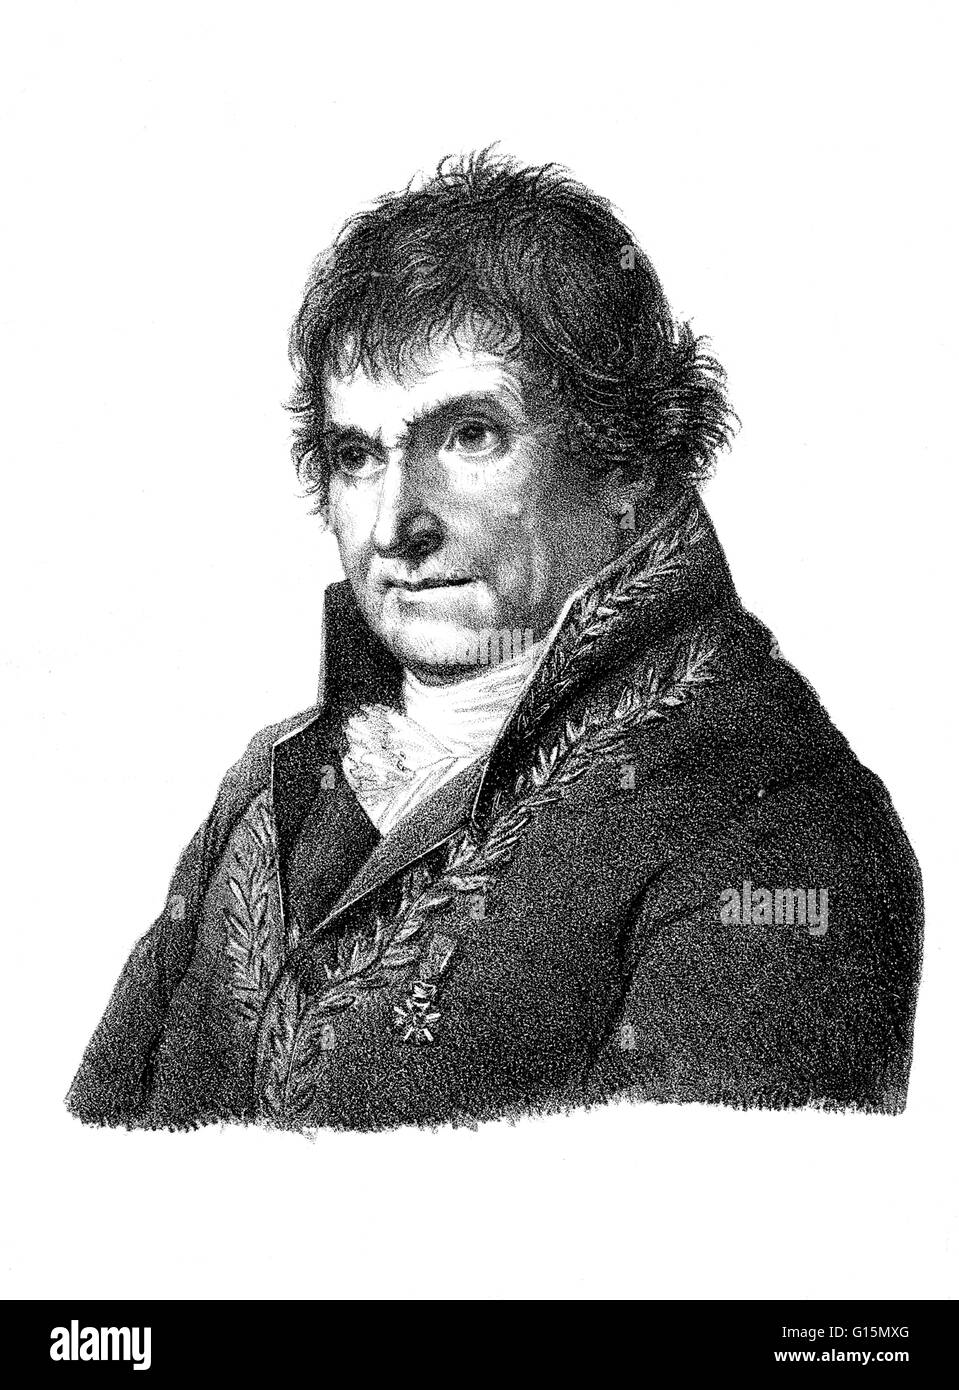 François Chaussier (Juillet 2, 1746 - Juin 19, 1828) était un médecin et anatomiste français. Il a étudié la médecine et a travaillé comme médecin de l'hôpital à Dijon. Pendant ce temps, il a effectué des recherches pionnières dans le domaine de la médecine légale. En 1780, il est devenu un Banque D'Images